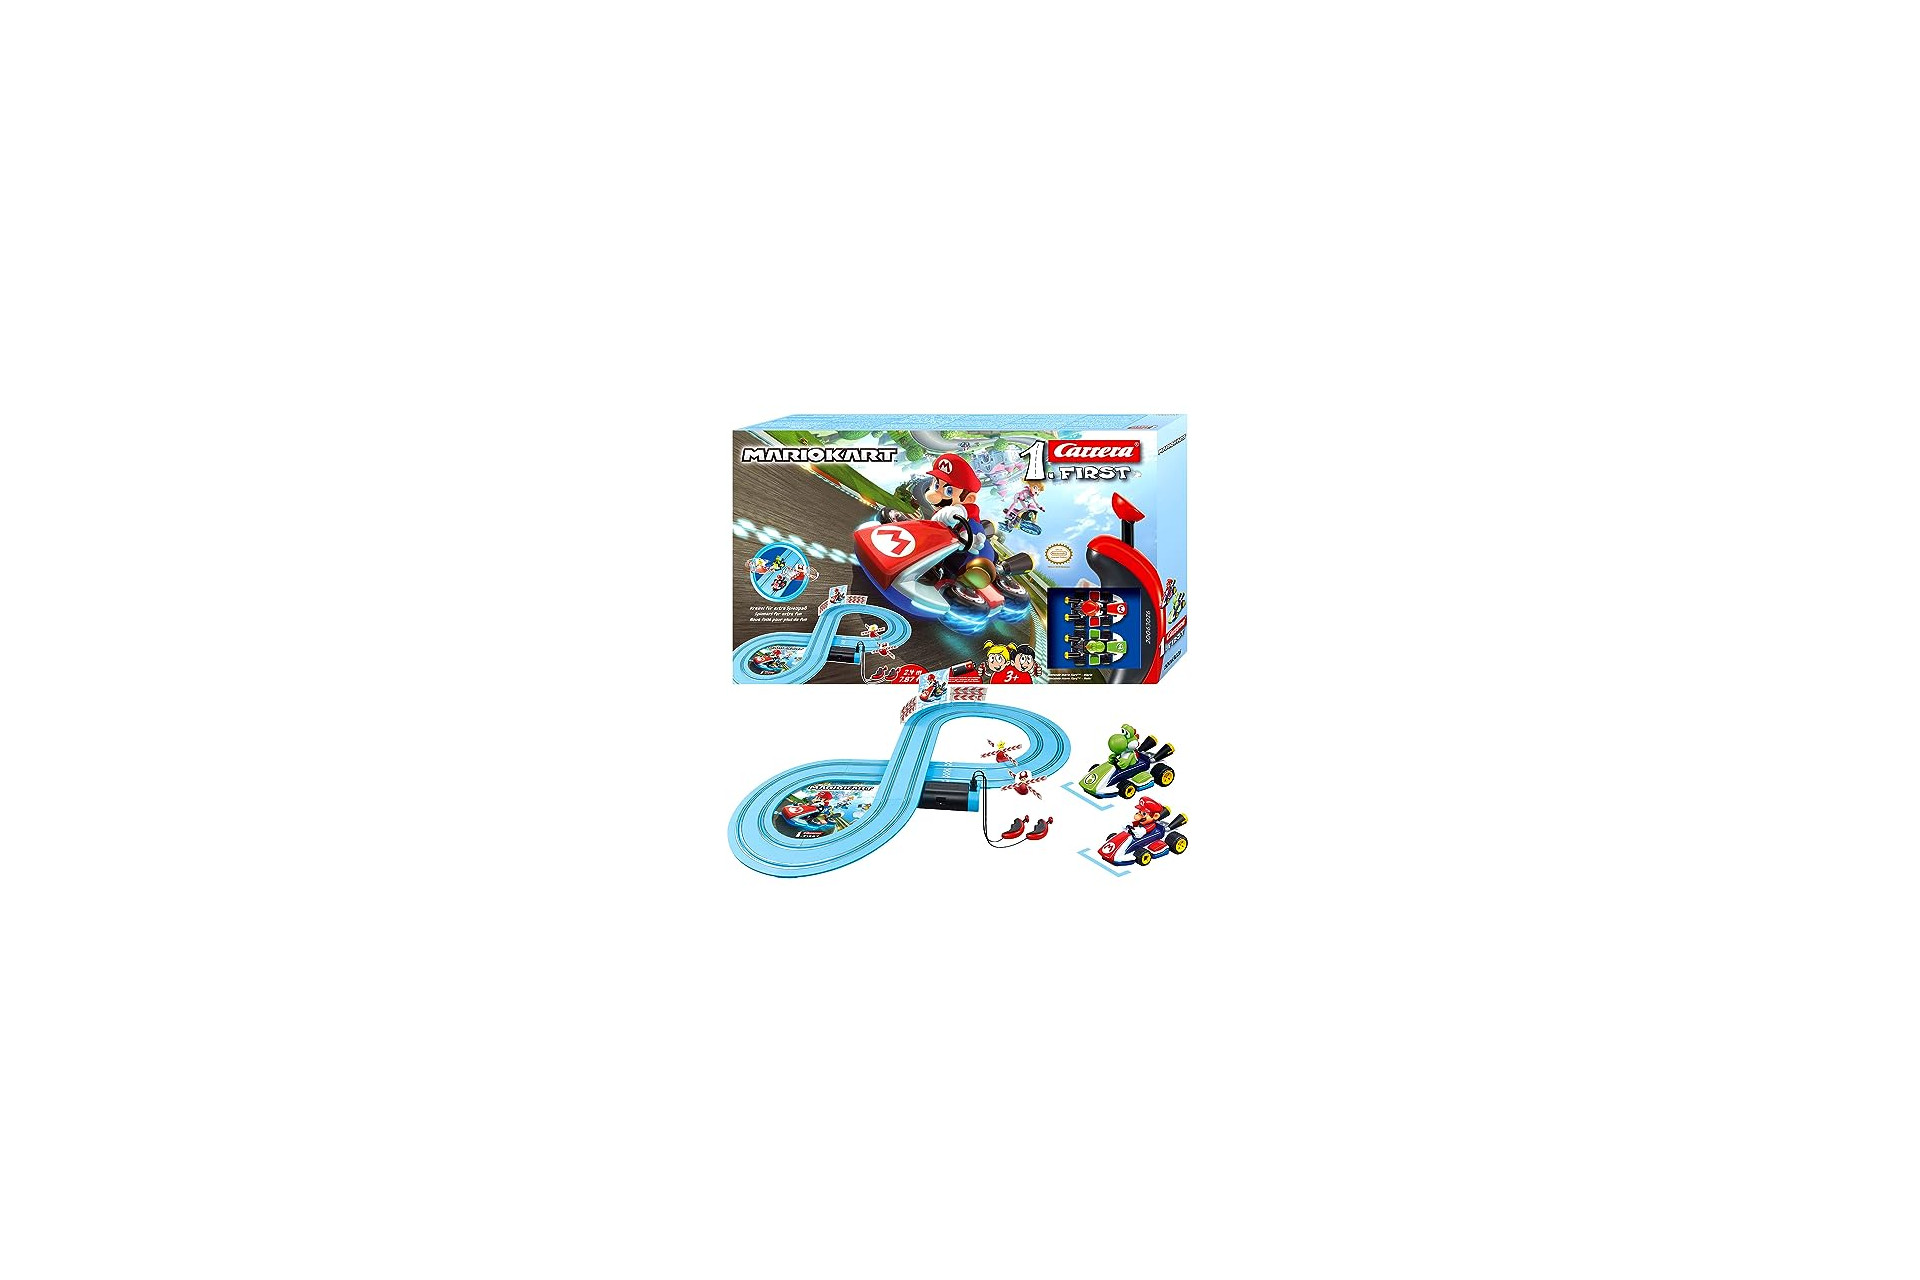 Carrera FIRST Nintendo Mario Kart – Circuit de course électrique avec  voitures miniatures Mario et Luigi – Jouet pour enfants à partir de 3 ans